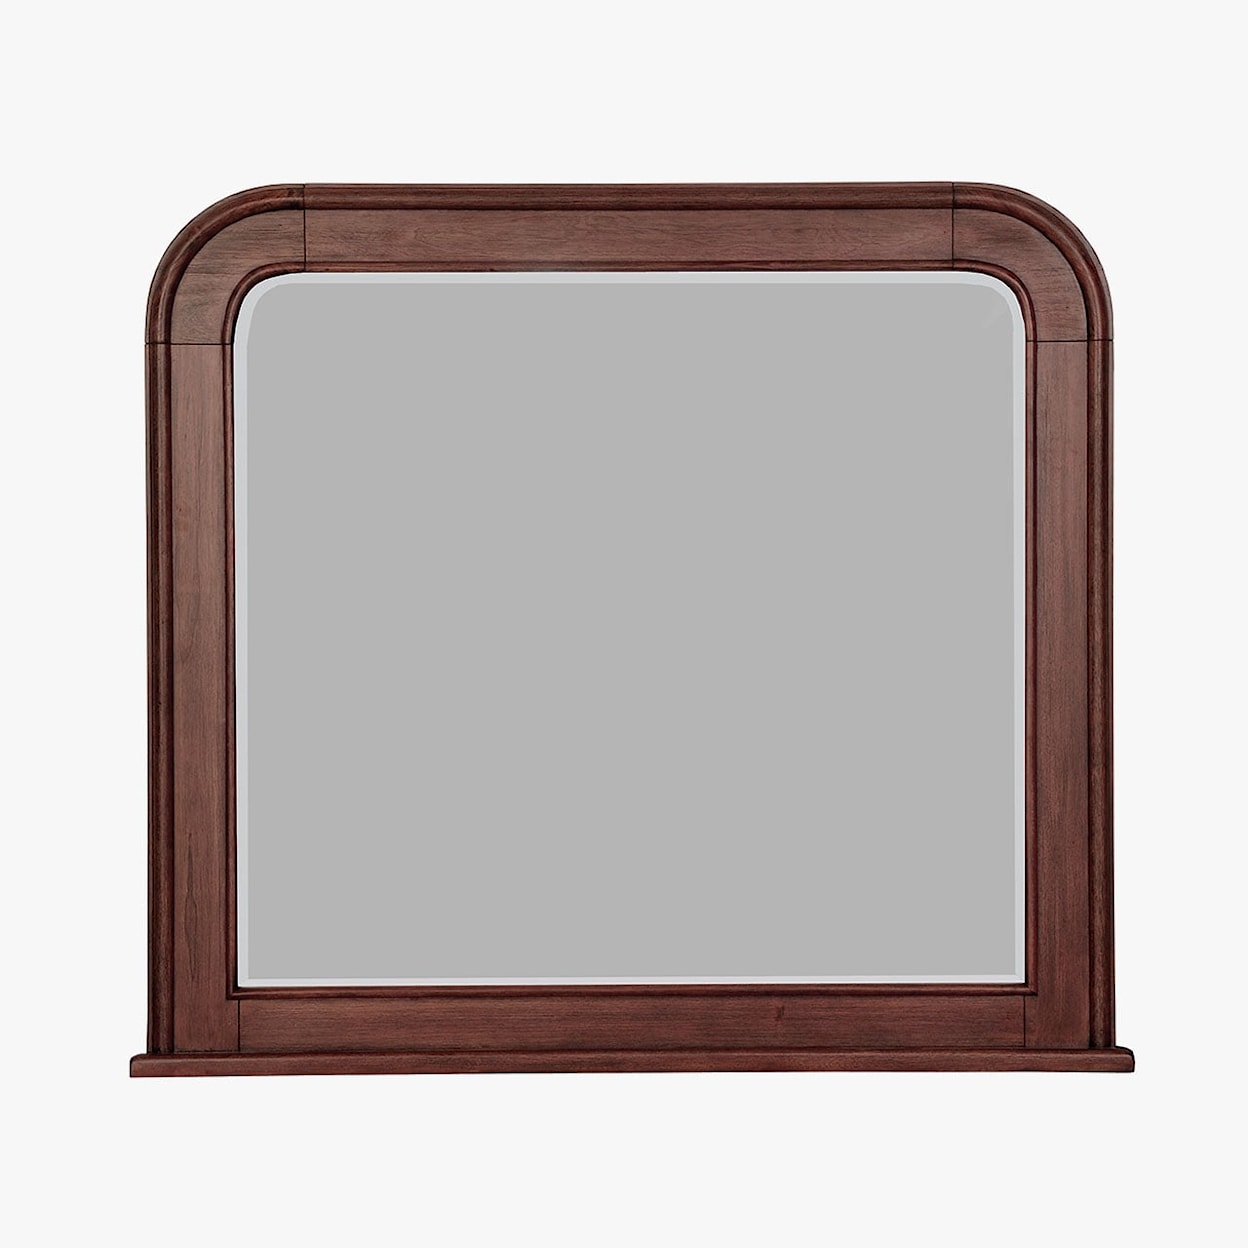 Virginia Furniture Market Solid Wood Montpelier Dresser Mirror